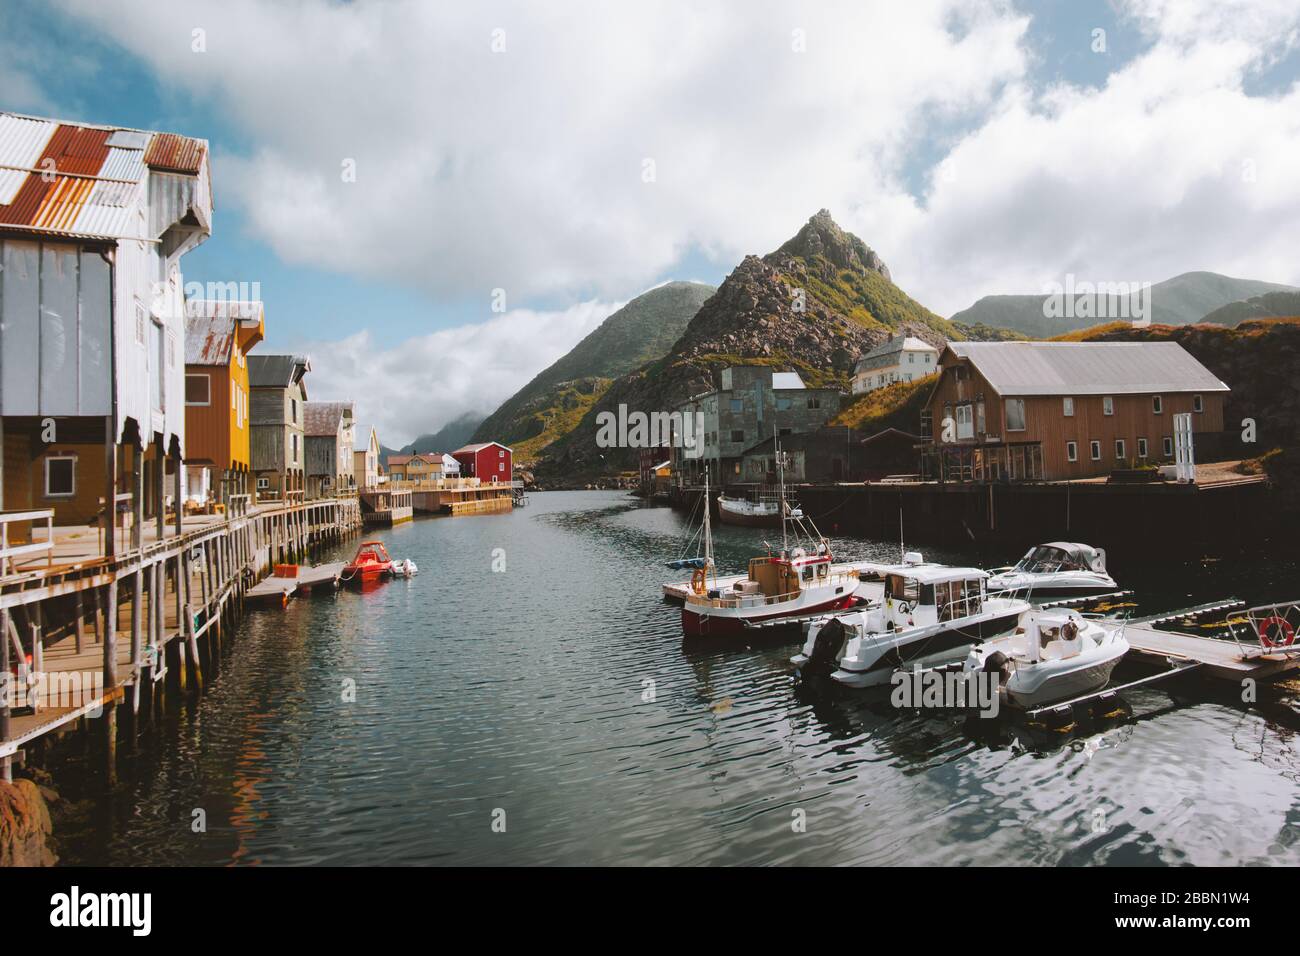 Nyksund villaggio di pescatori in Norvegia tradizionale architettura case in legno rorbu e fiordo con montagne scandinave destinazioni di viaggio paesaggio Foto Stock